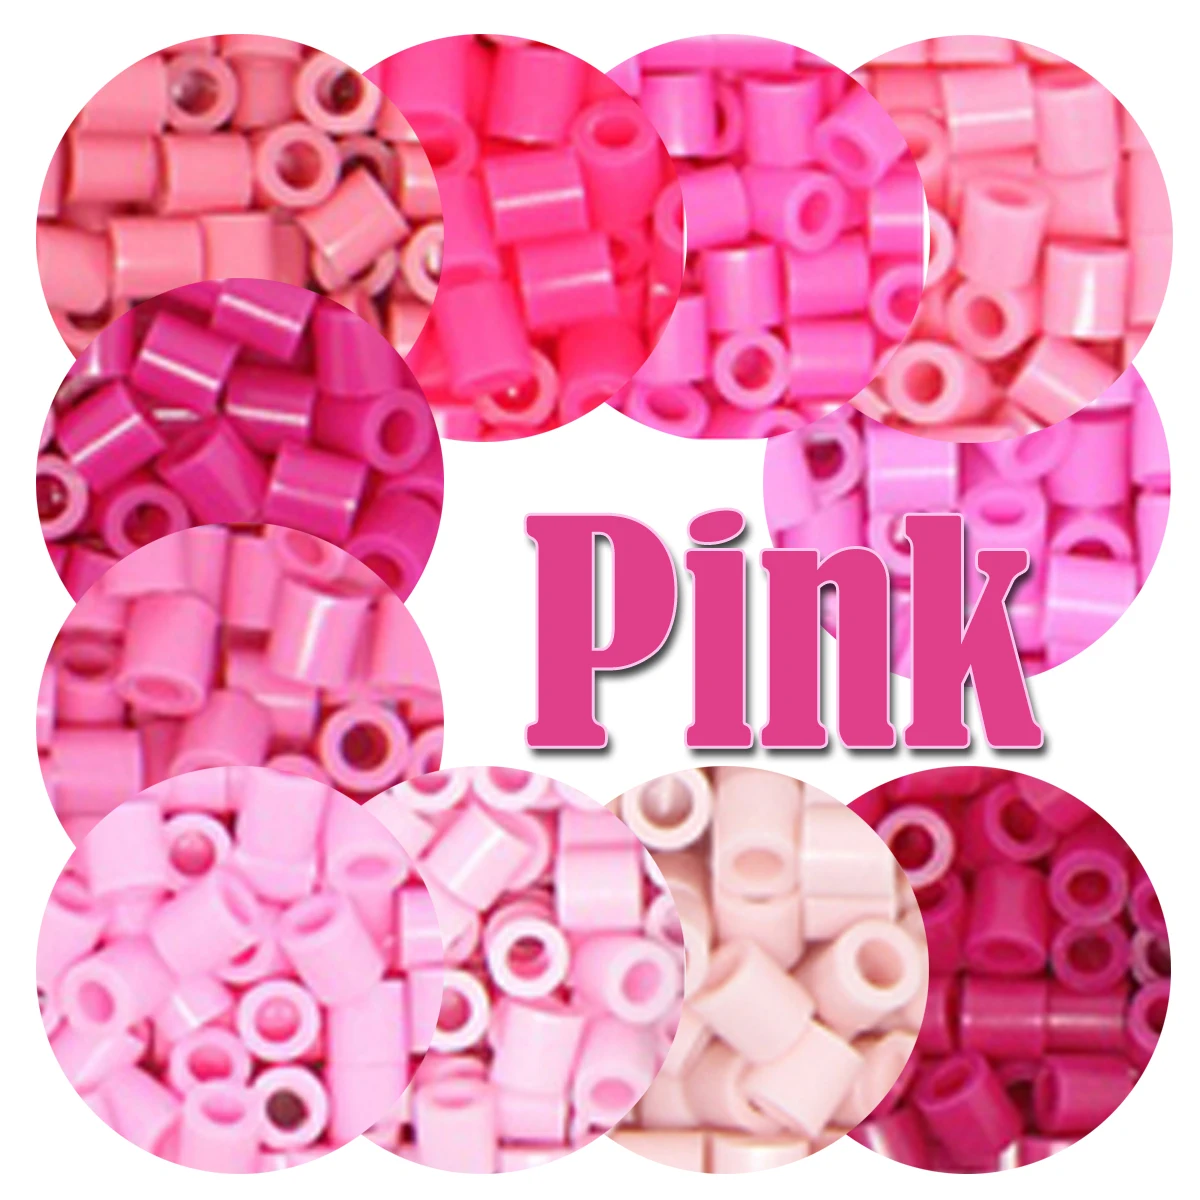 핑크 컬러 5mm 비즈 1000 피스 픽셀 아트 하마 비즈 아이언 퓨즈 비즈 Diy 퍼즐 선물 어린이 완구, 어린이 완구